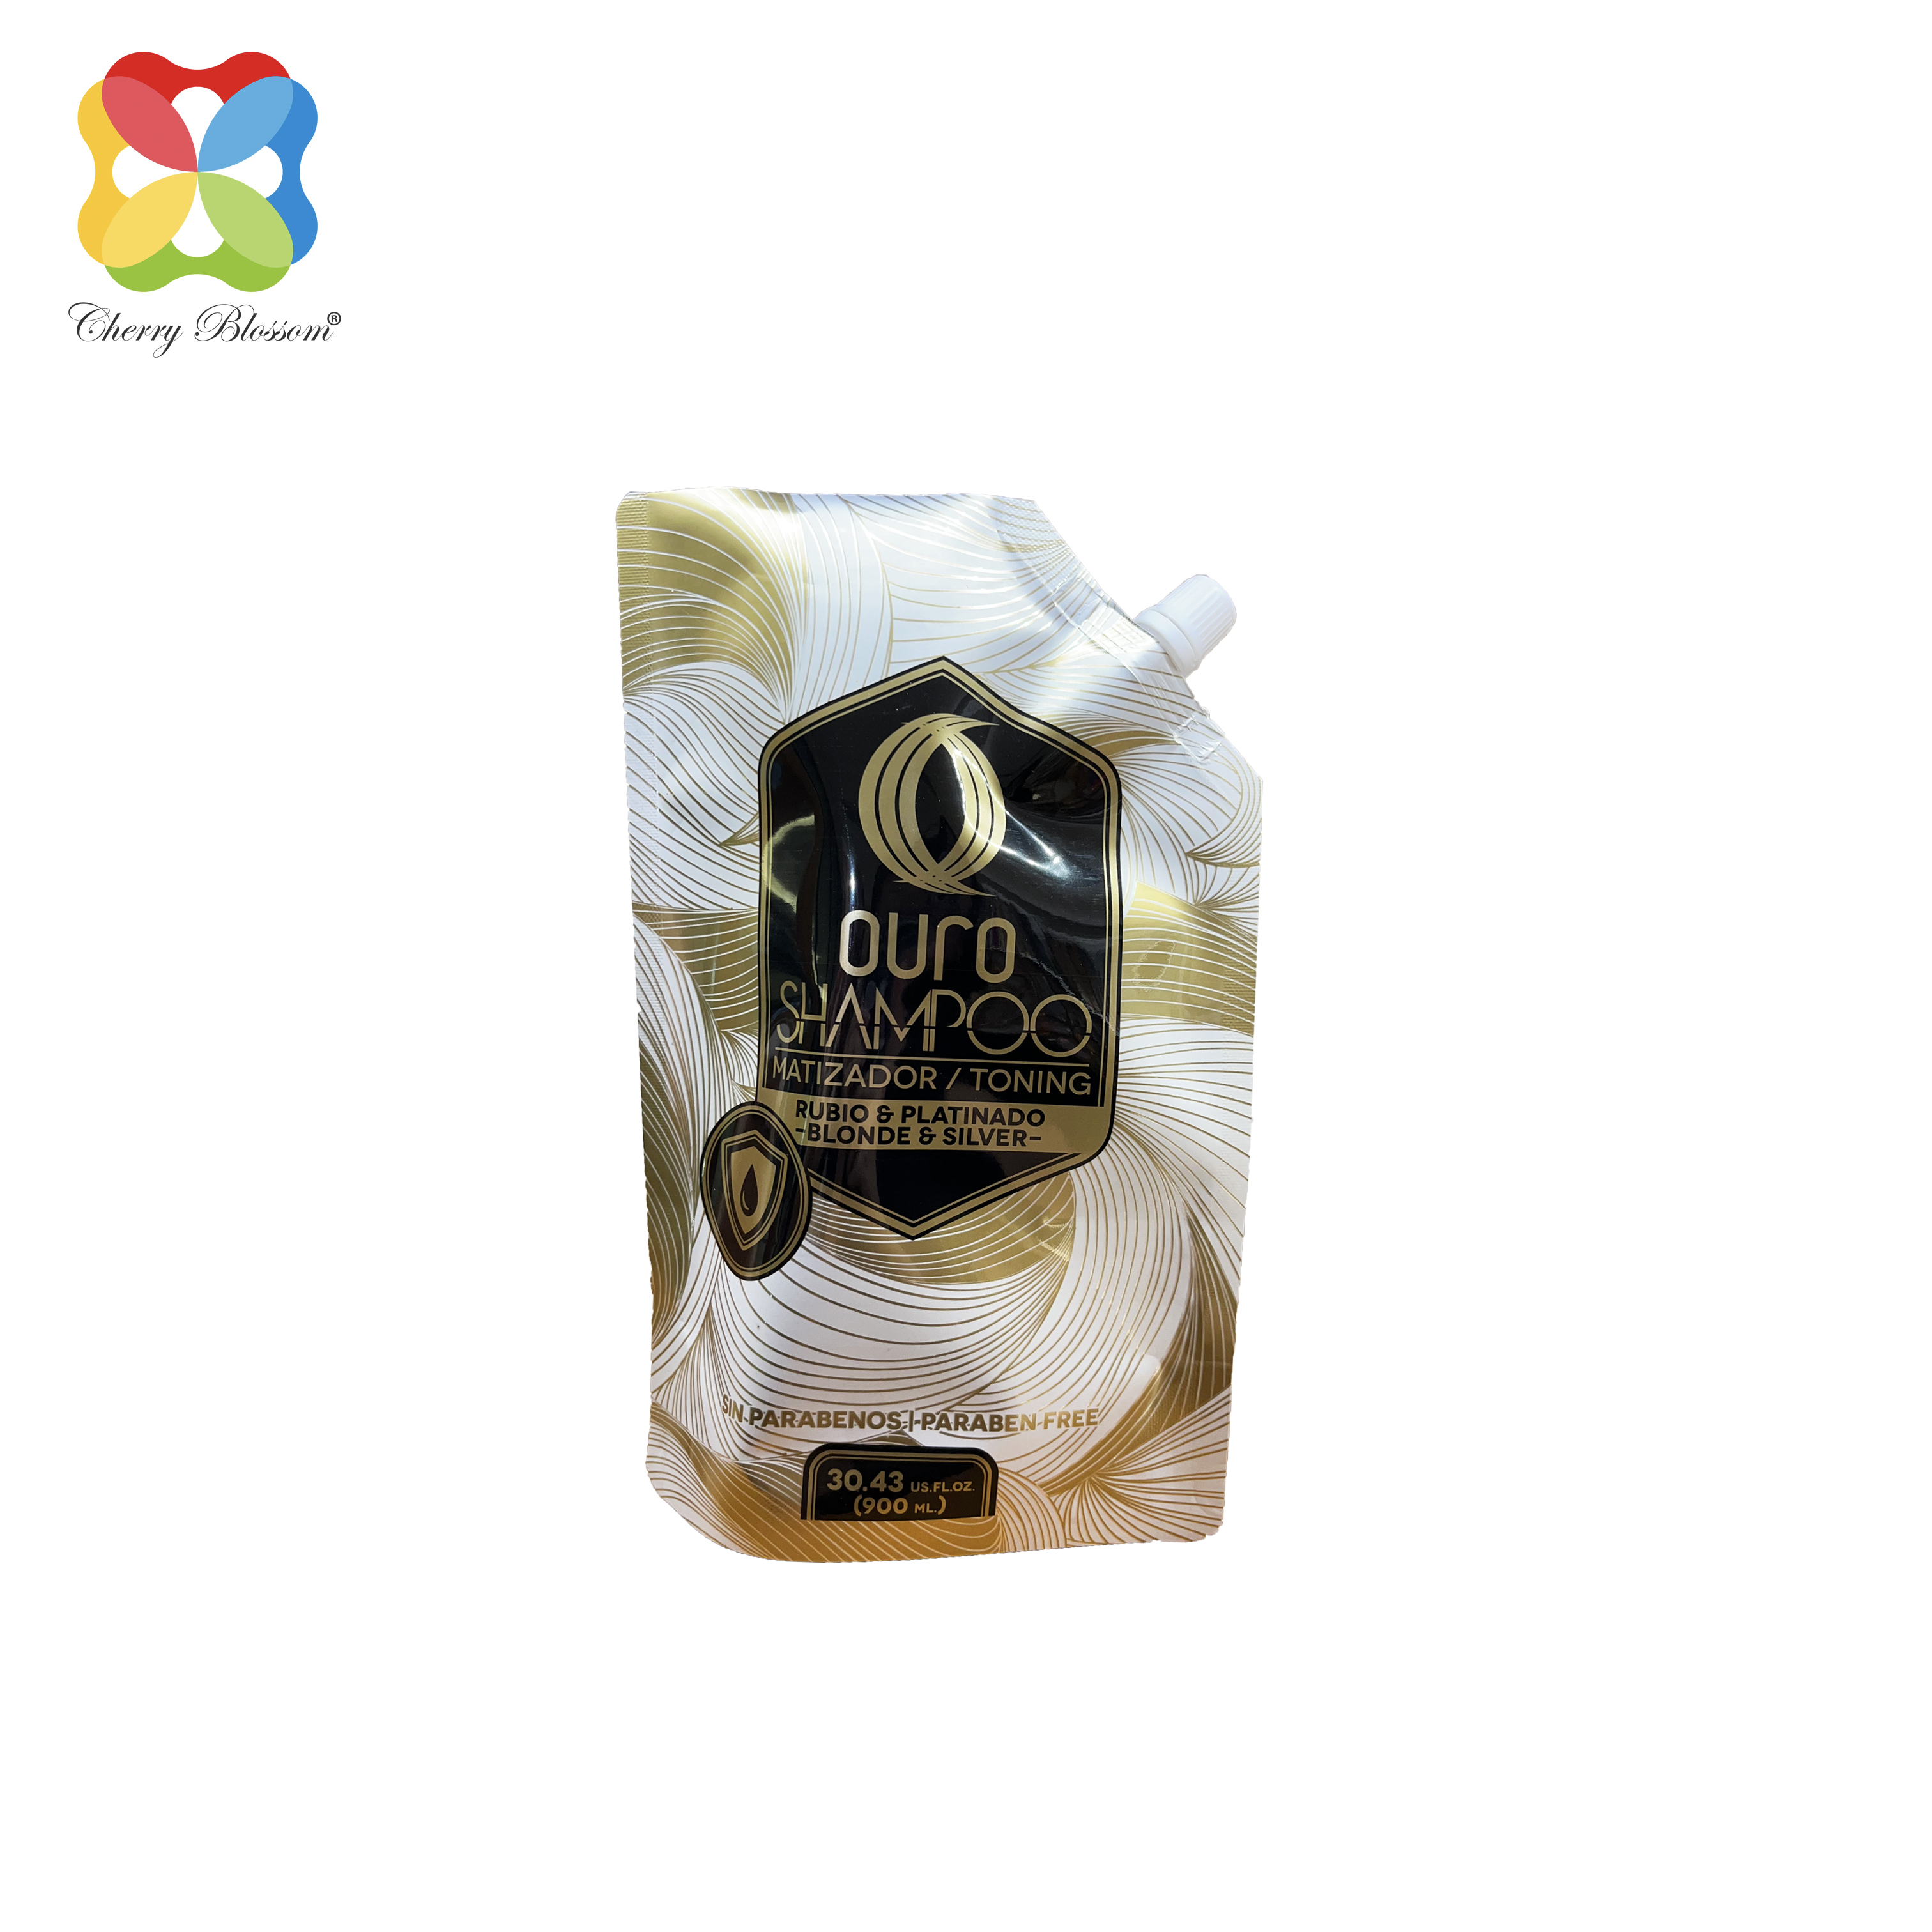 Shampoo al profumo di cocco Confezione stand up con beccuccio Confezione shampoo personalizzata con stampa rotocalco